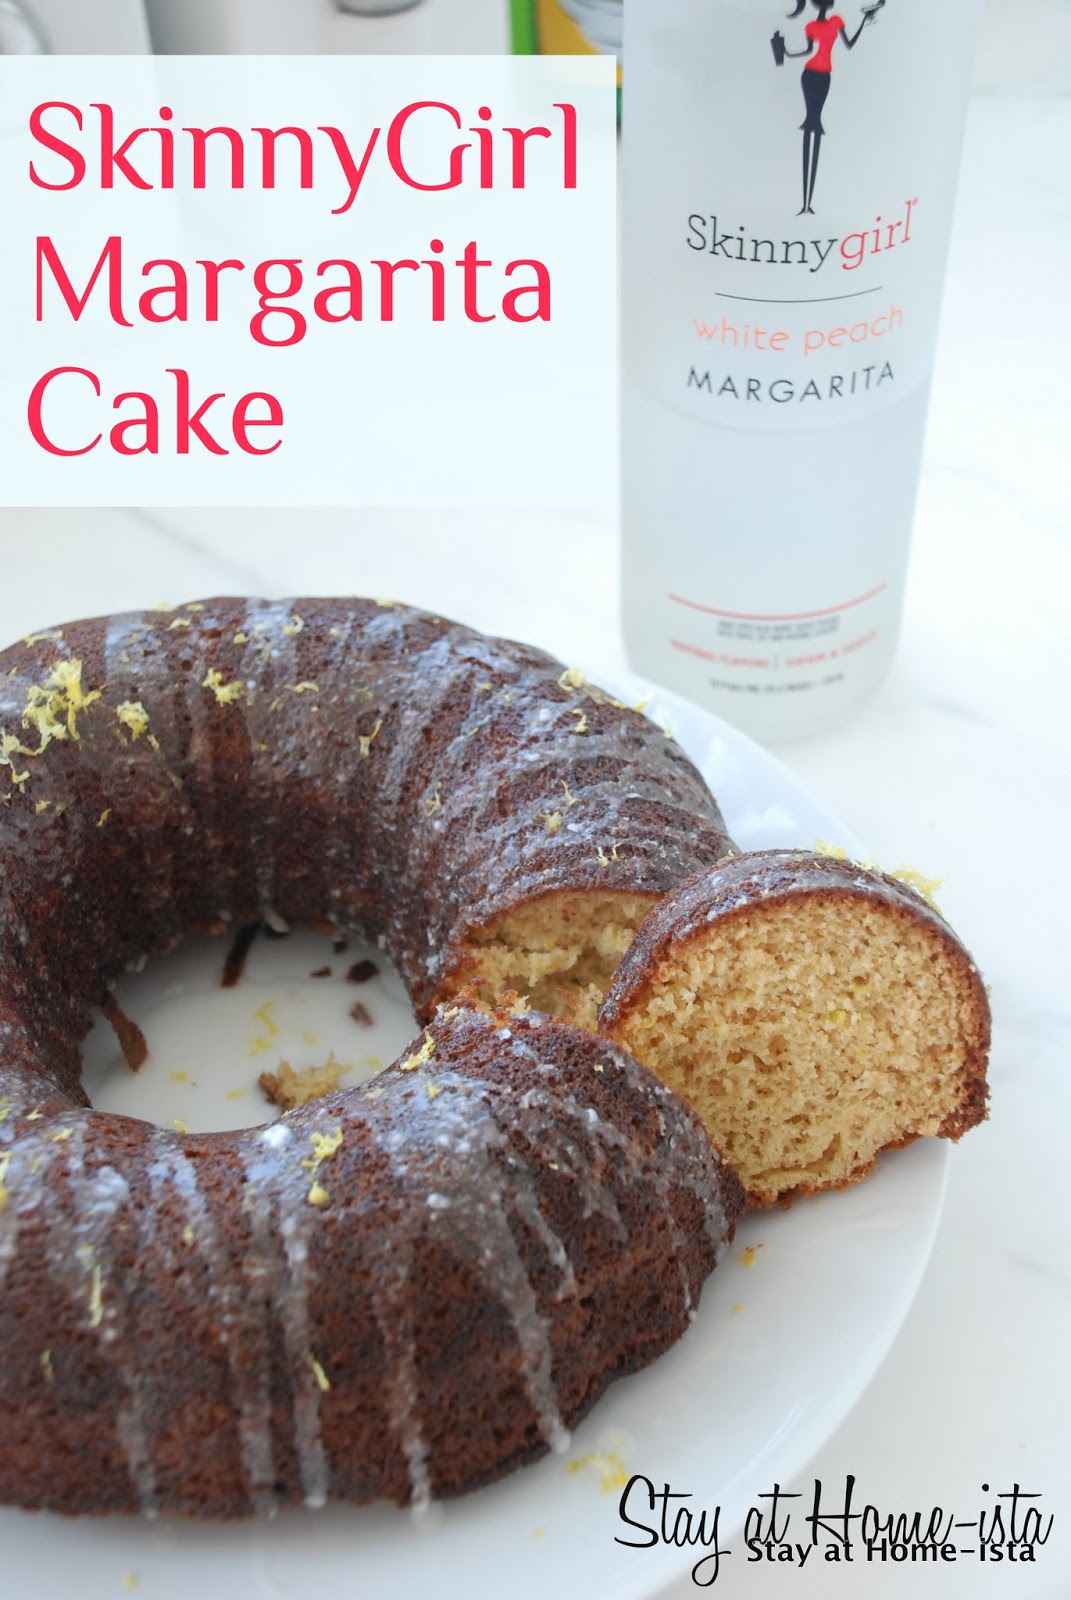 http://3.bp.blogspot.com/-QGJxdFvHnzI/UQqfovTjskI/AAAAAAAAJXQ/1roWO4vSjag/s1600/Margarita+Cake.jpg